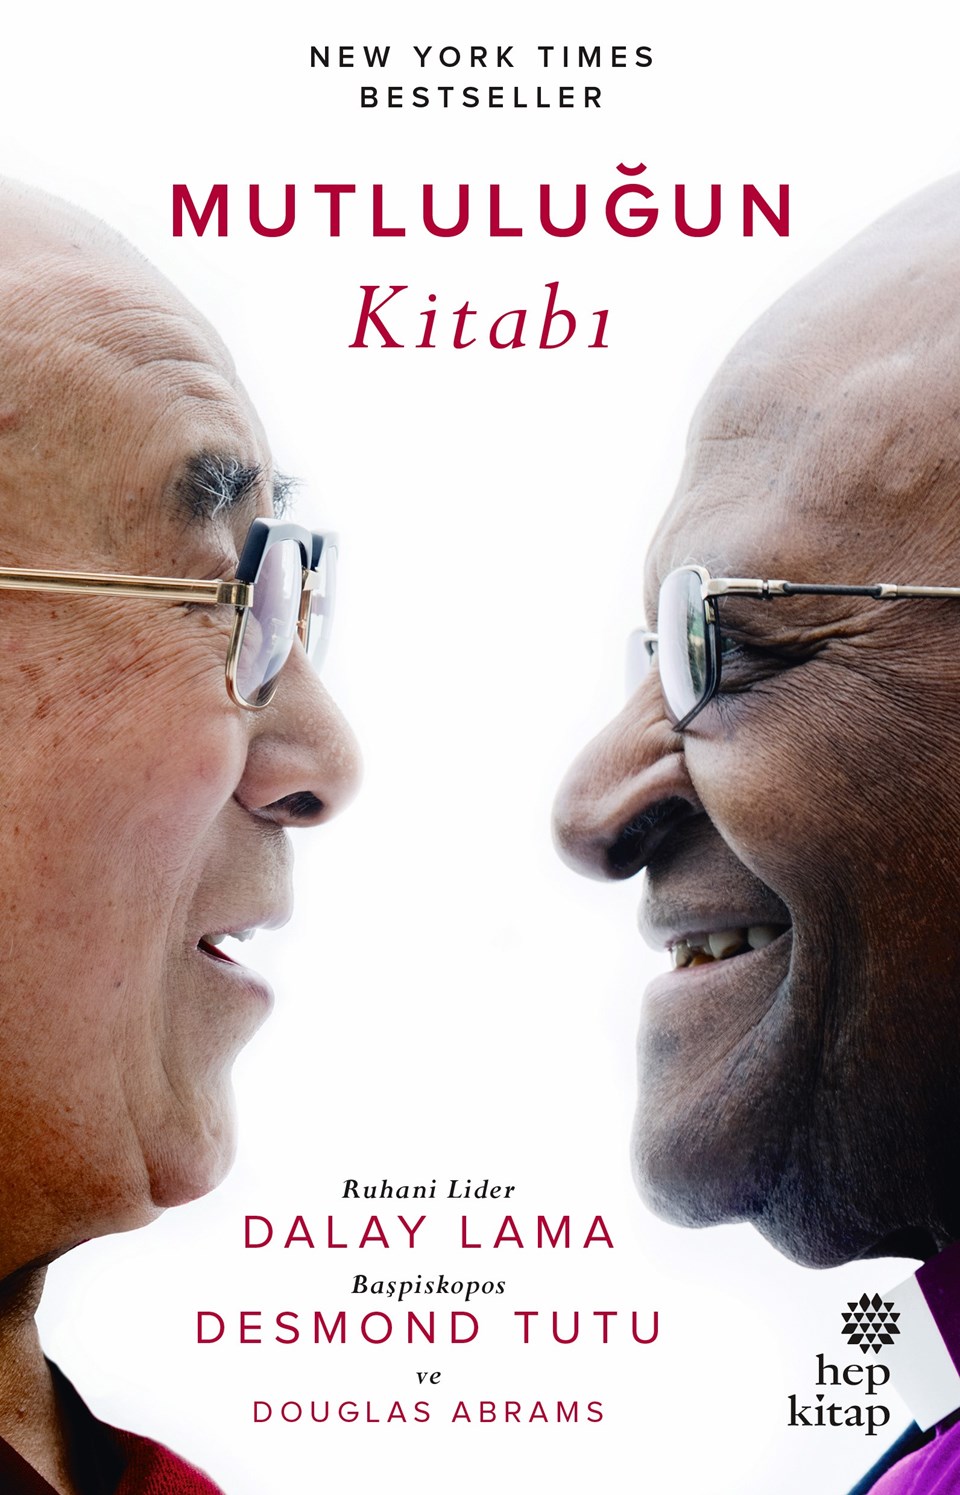 Dalay Lama ve Desmond Tutu 'Mutluluğun Kitabı'nı yazdı - 1